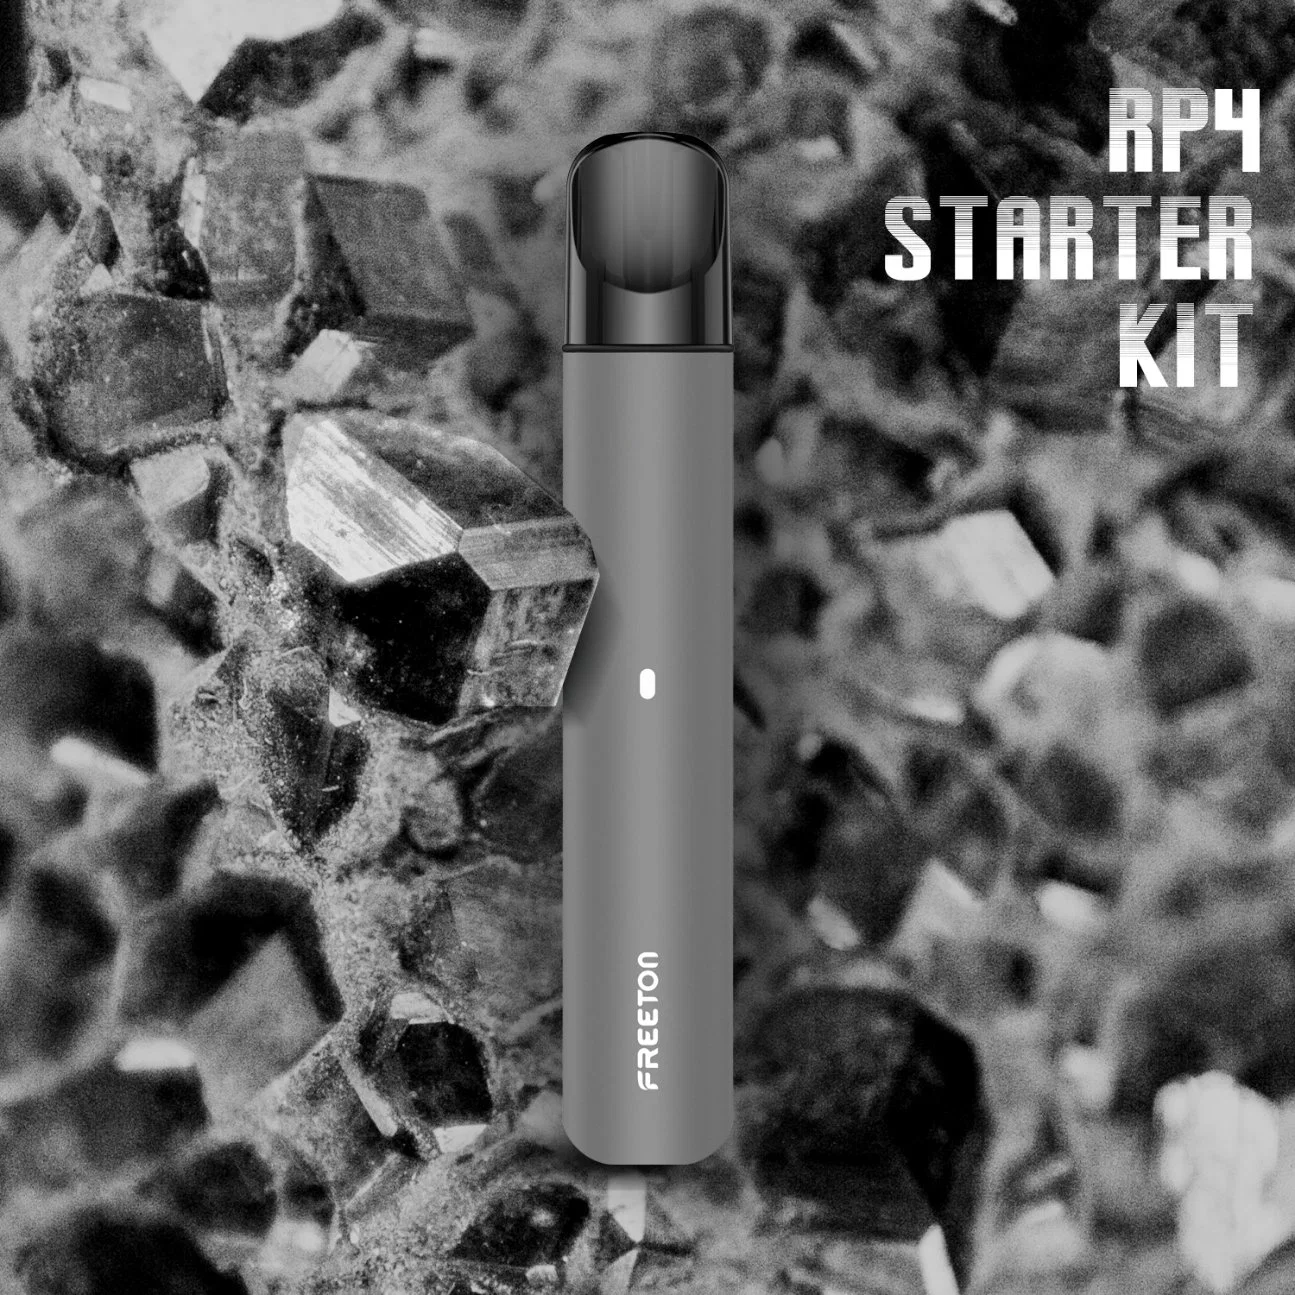 Freeton RP4 Starter Kit Disposable Device E Cigarette Vapor 350mAh 2ml Replaceable Cartridge